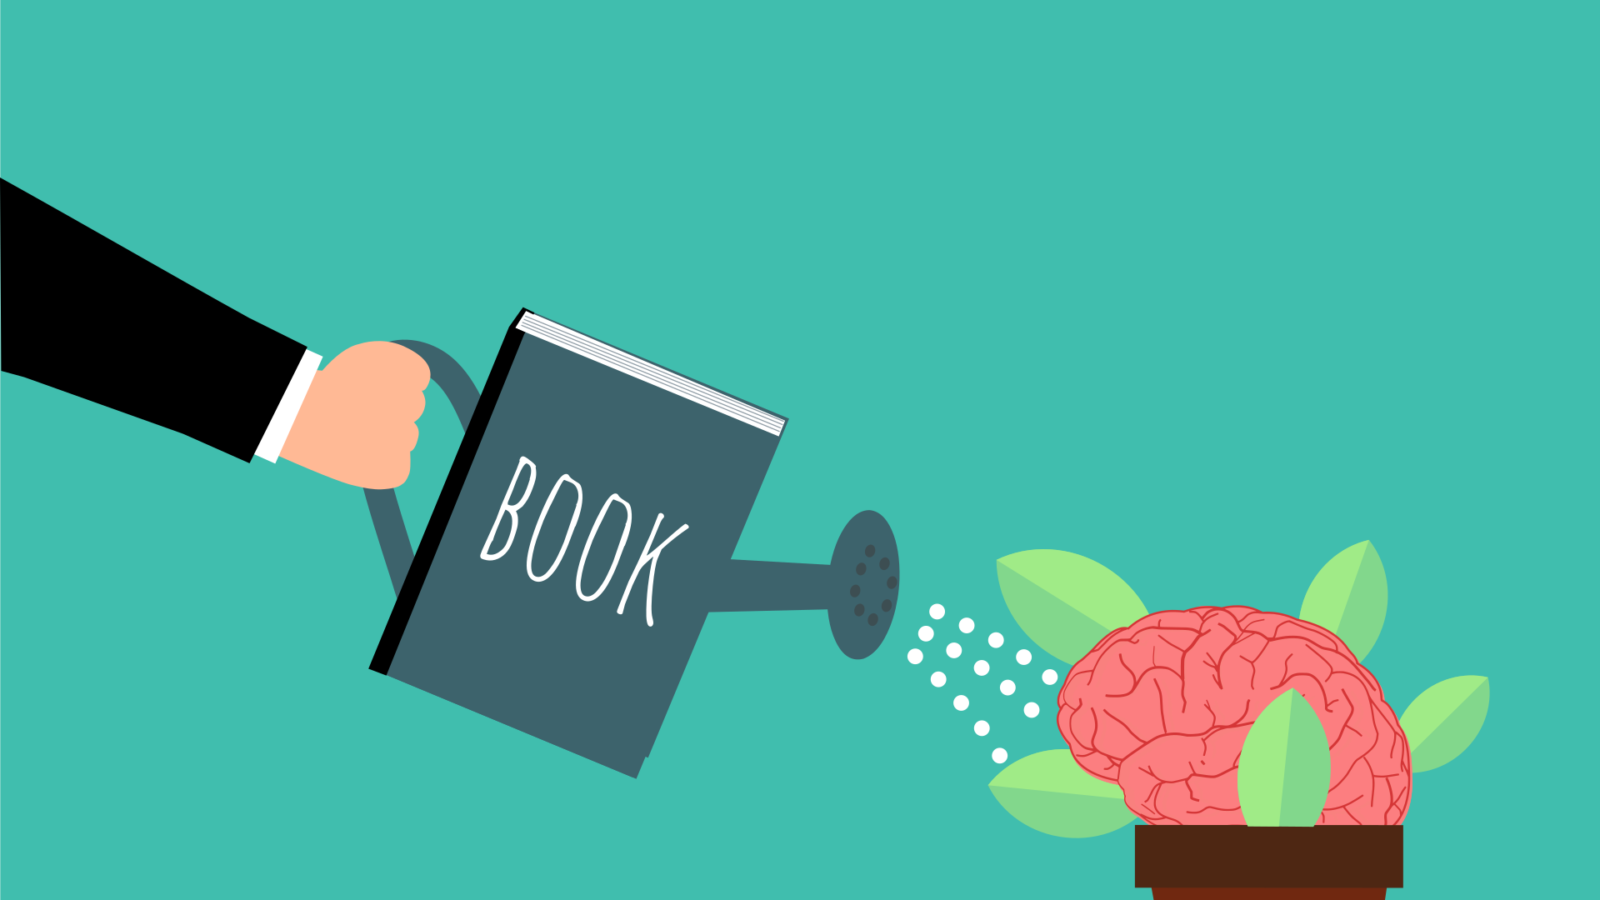 Un Libro es como un cerebro